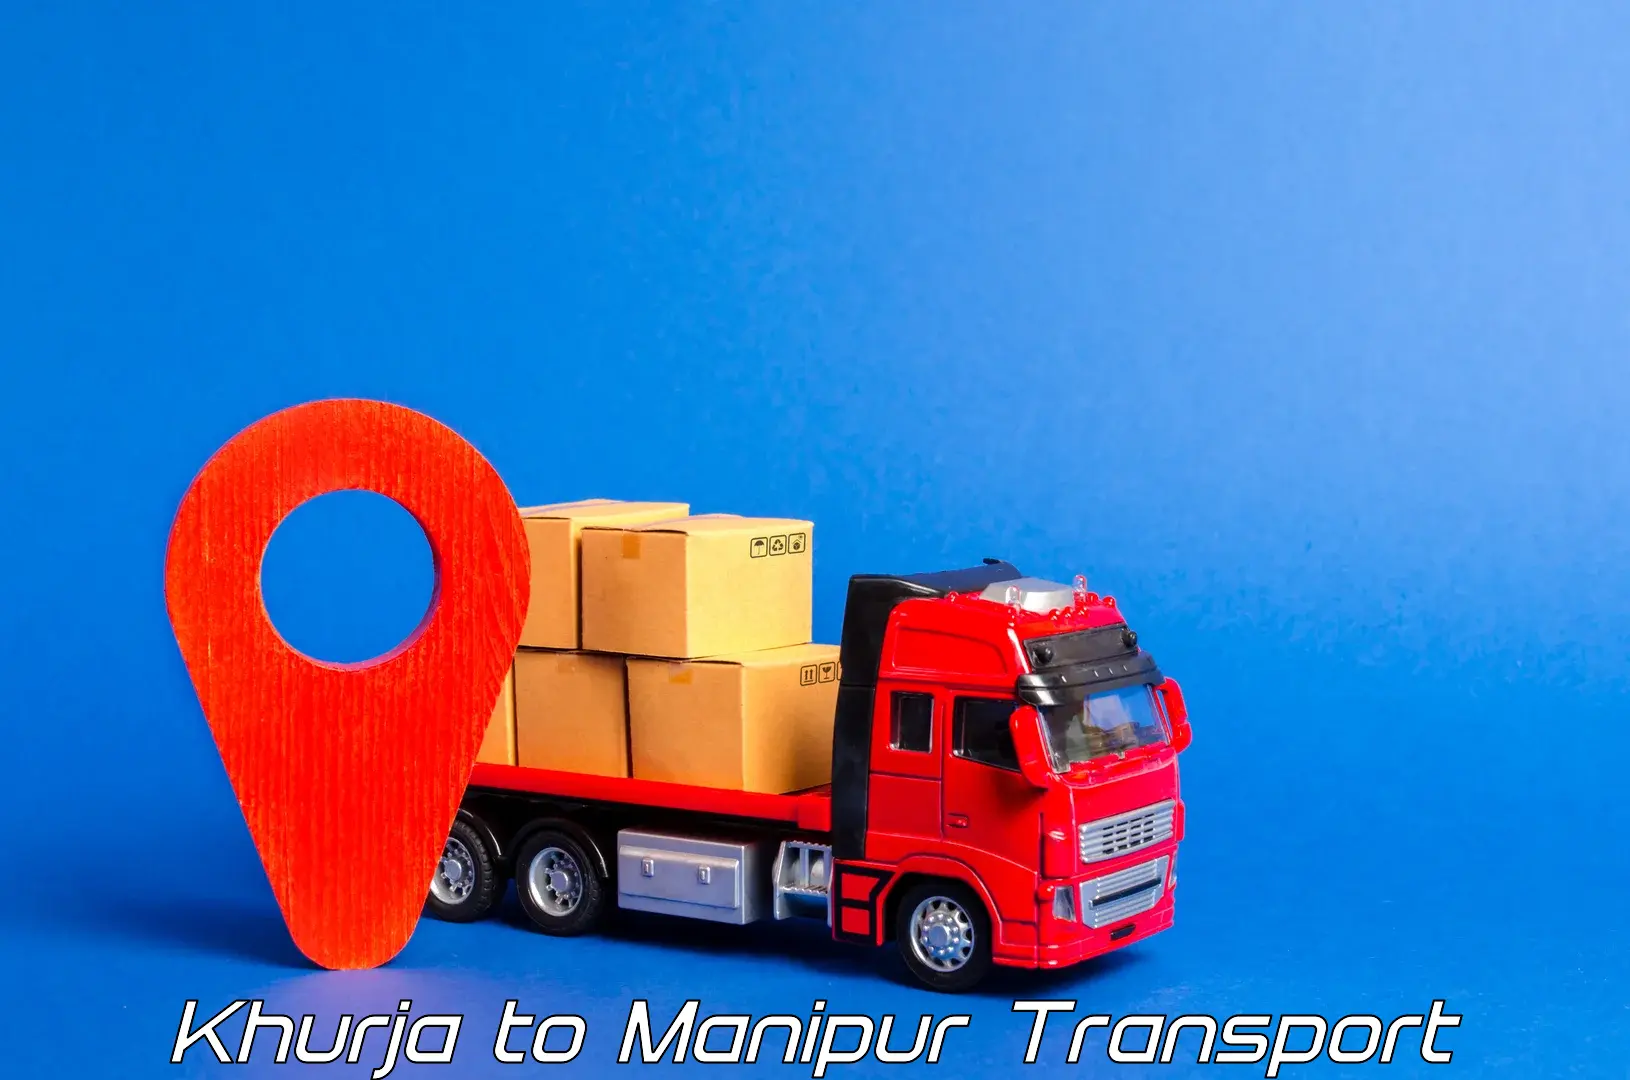 Road transport online services Khurja to Moirang